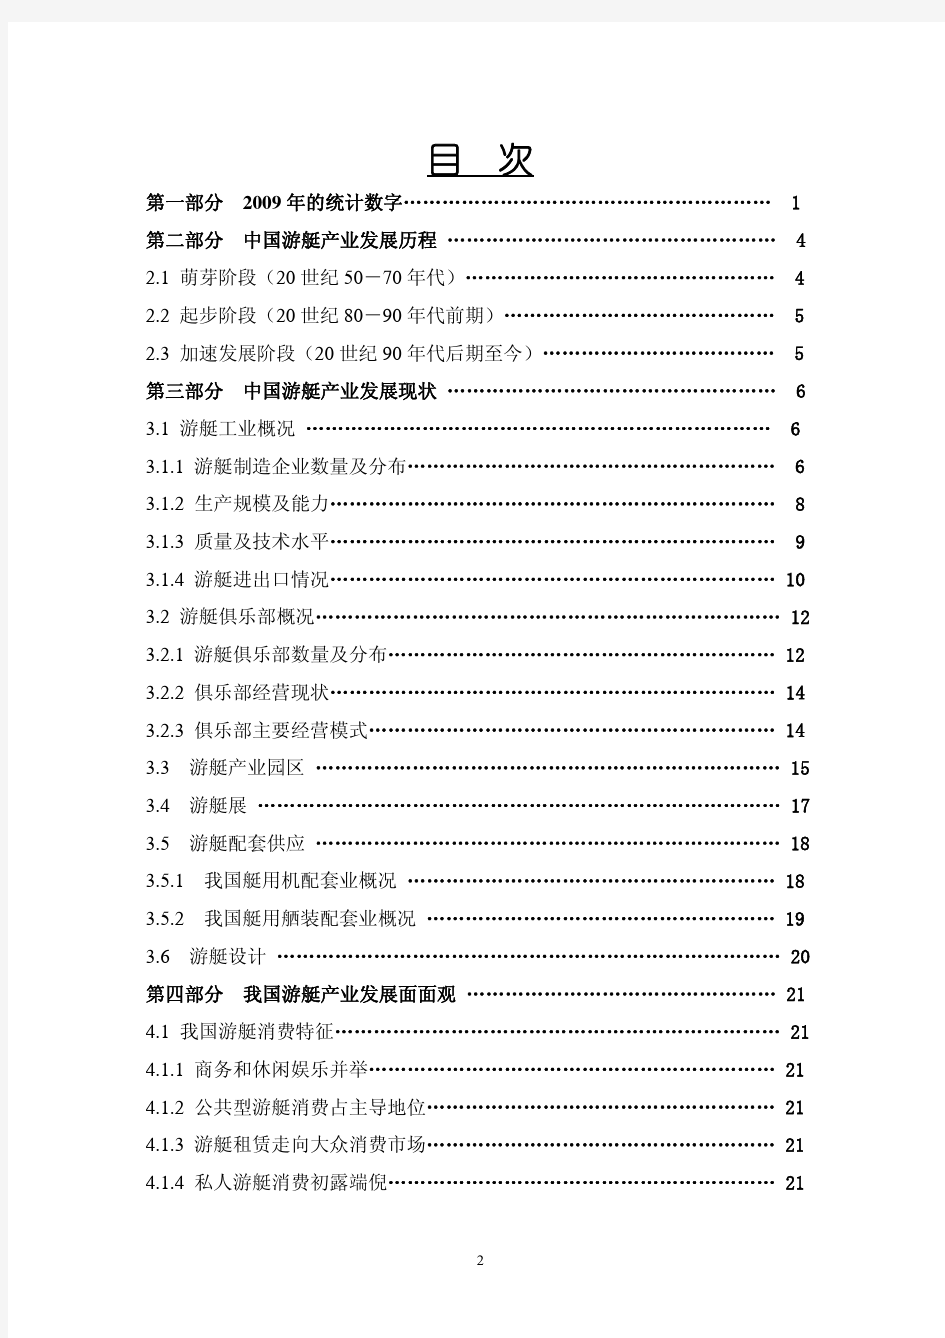 中国游艇产业发展综述报告(精简)